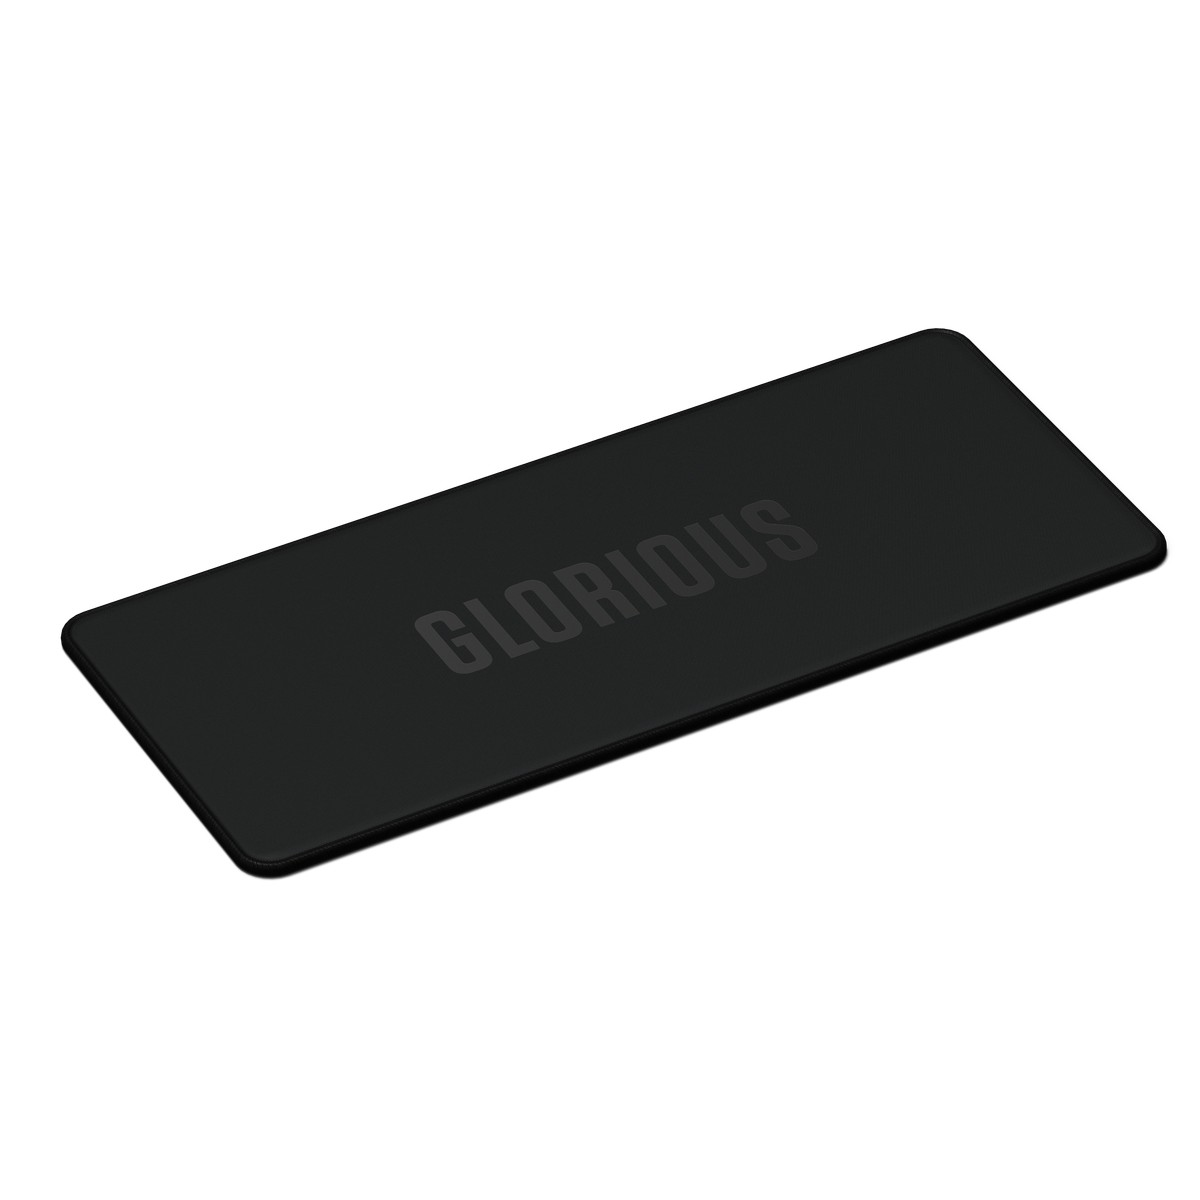 Glorious - Glorious Sound Dampening Keyboard Mat for GMMK Pro -Black (GLO-KBM-TKL-B)